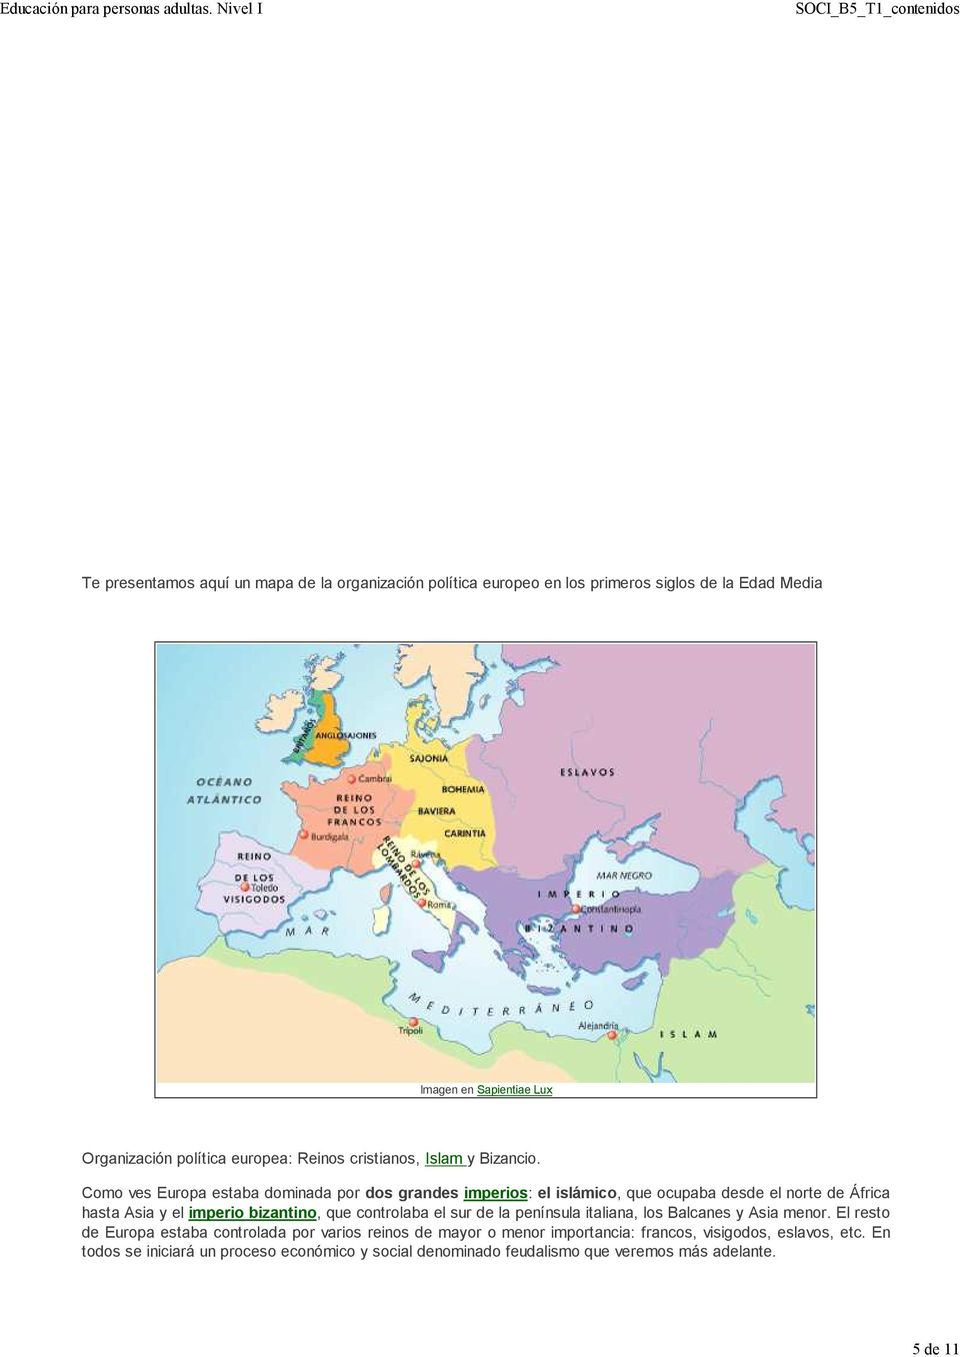 Como ves Europa estaba dominada por dos grandes imperios: el islámico, que ocupaba desde el norte de África hasta Asia y el imperio bizantino, que controlaba